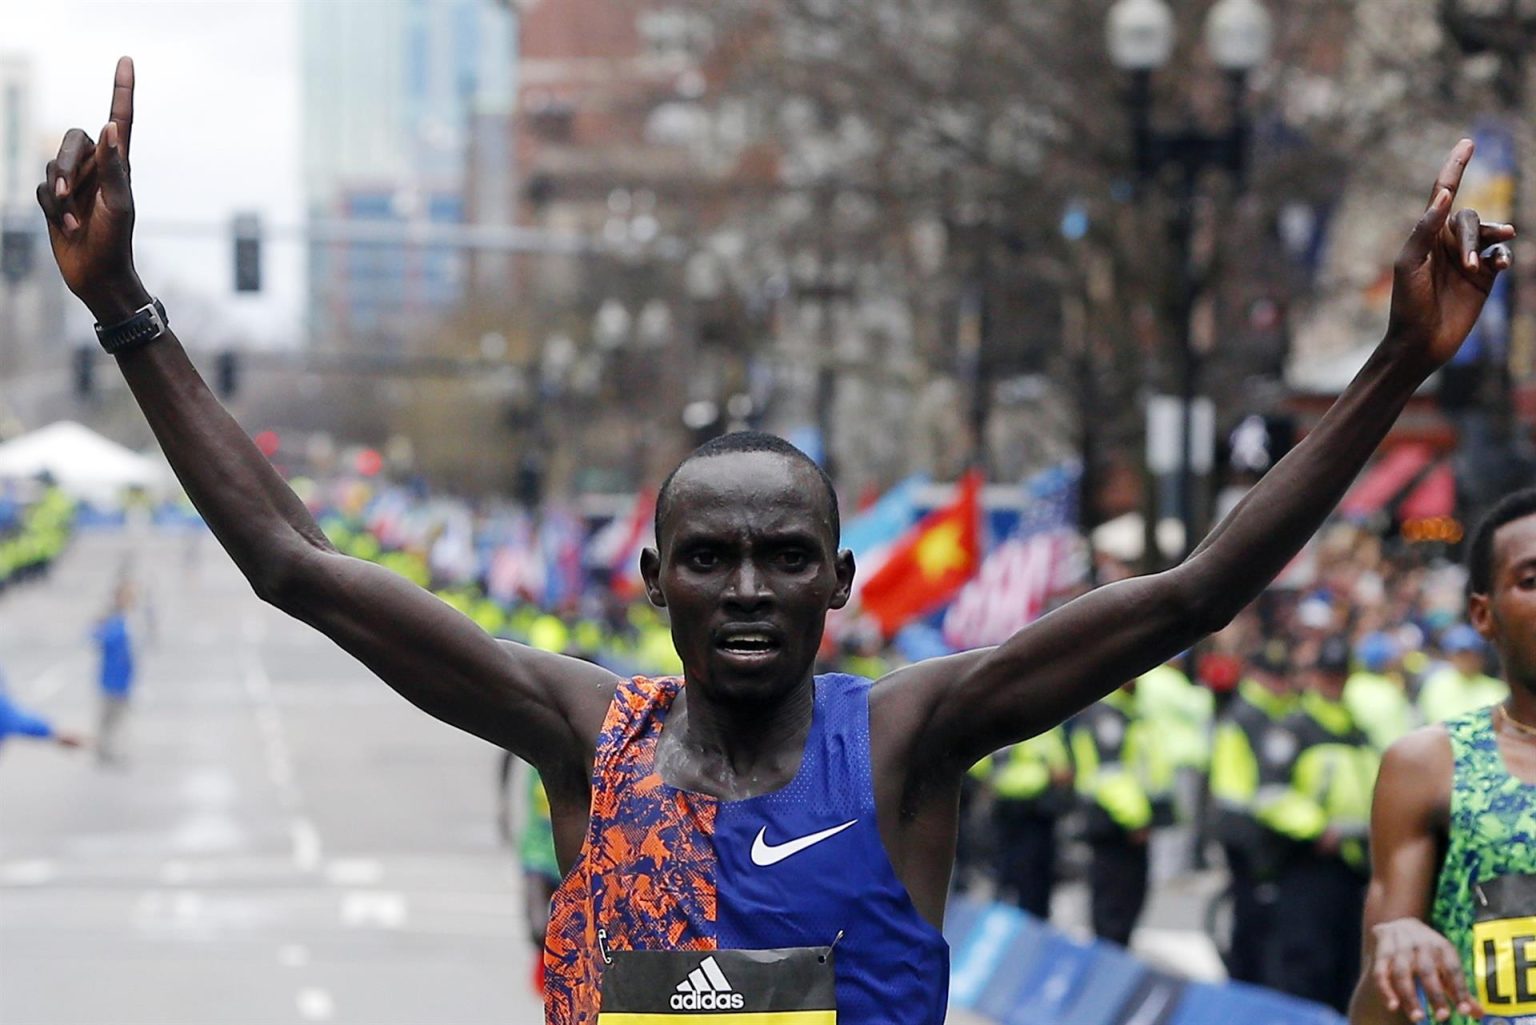 Fotografía de archivo, tomada el 15 de abril de 2019, en la que se registró al fondista keniata Lawrence Cherono (c), al ganar el maratón de Boston, en la capital del estado de Massachusetts (EE.UU.). EFE/CJ Gunther